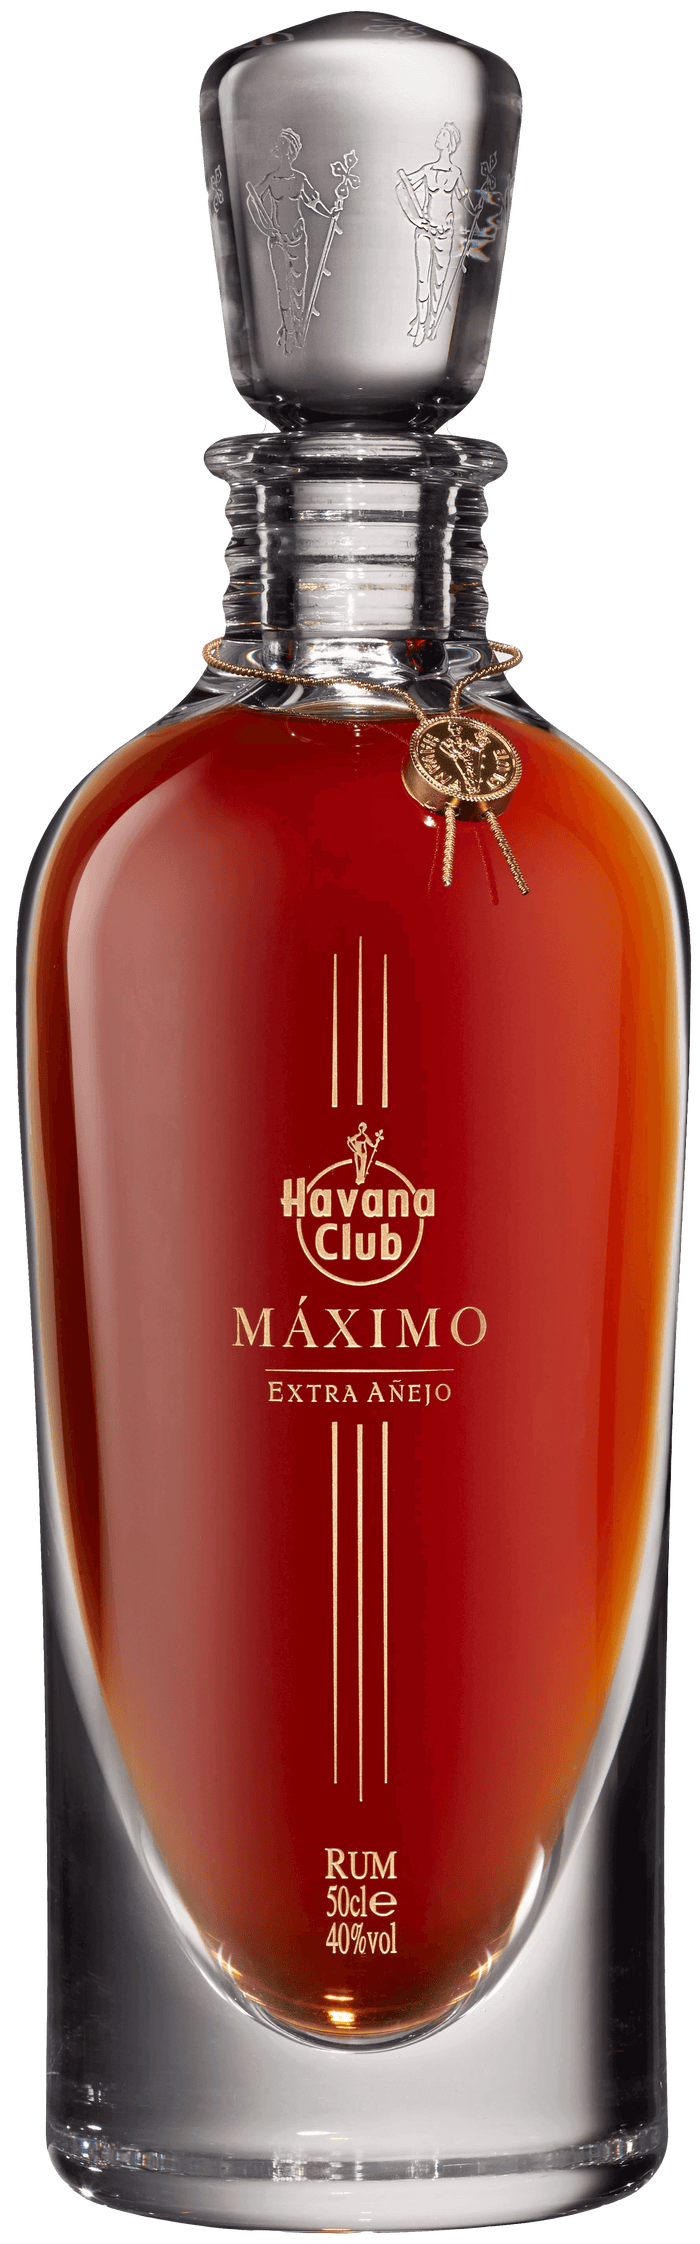 Havana Club Maximo Extra Anejo Rum | 500ML